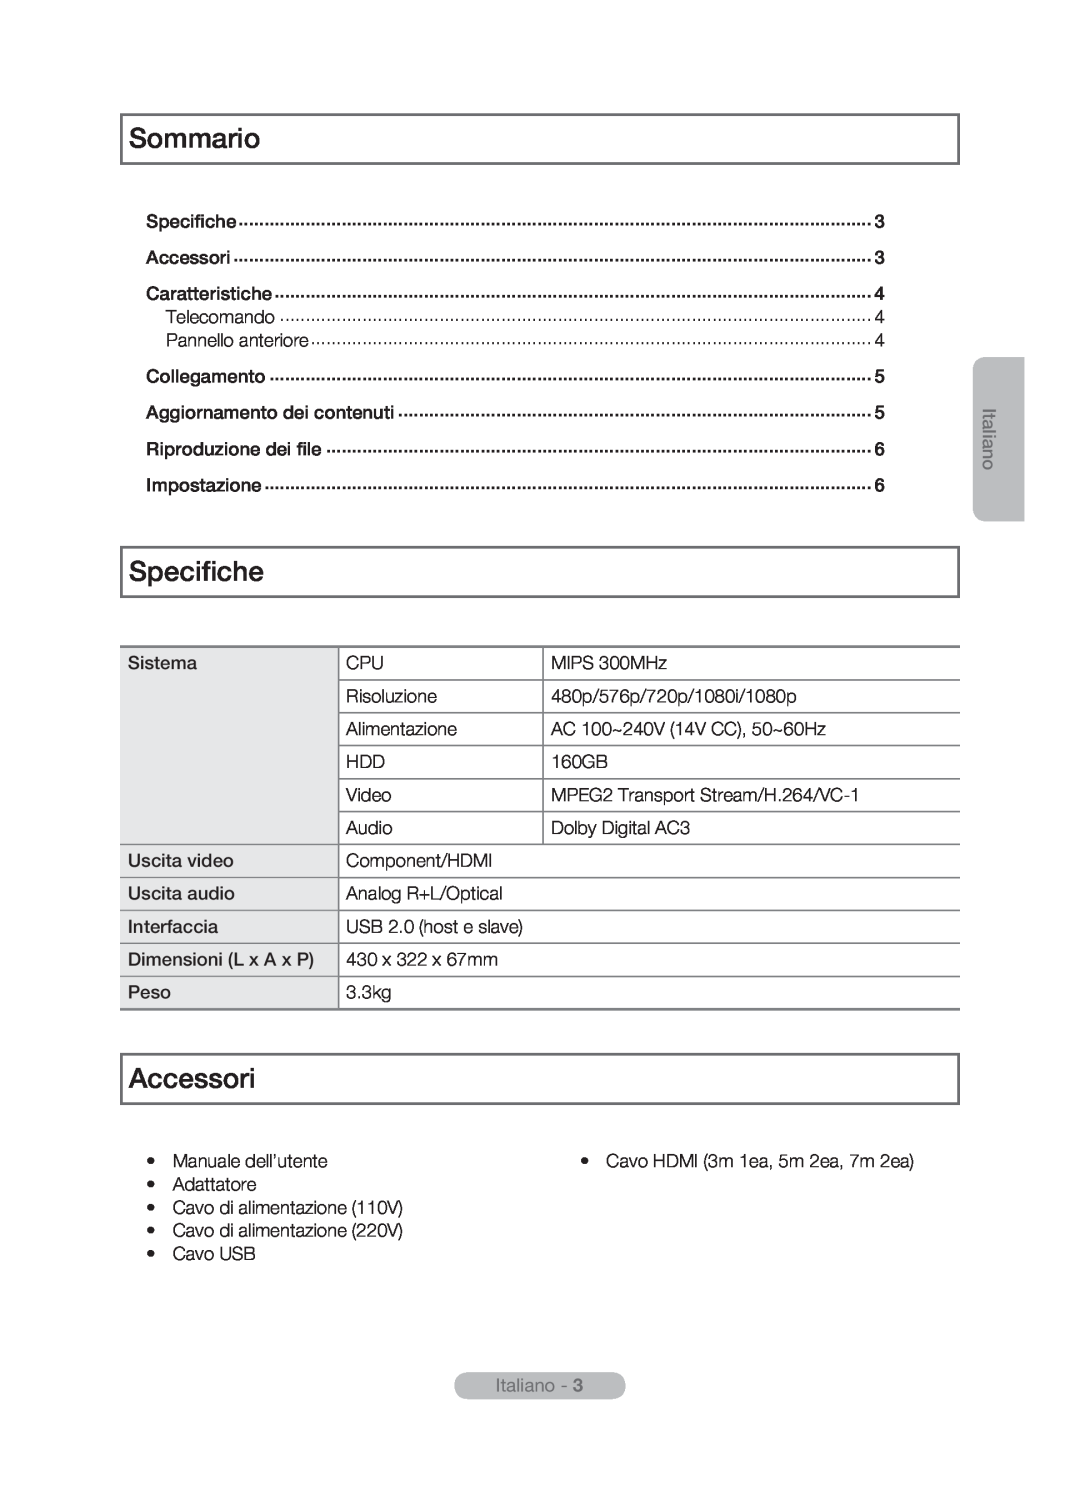 Samsung MR-16SB2 manual Sommario, Specifiche, Accessori, Italiano -  